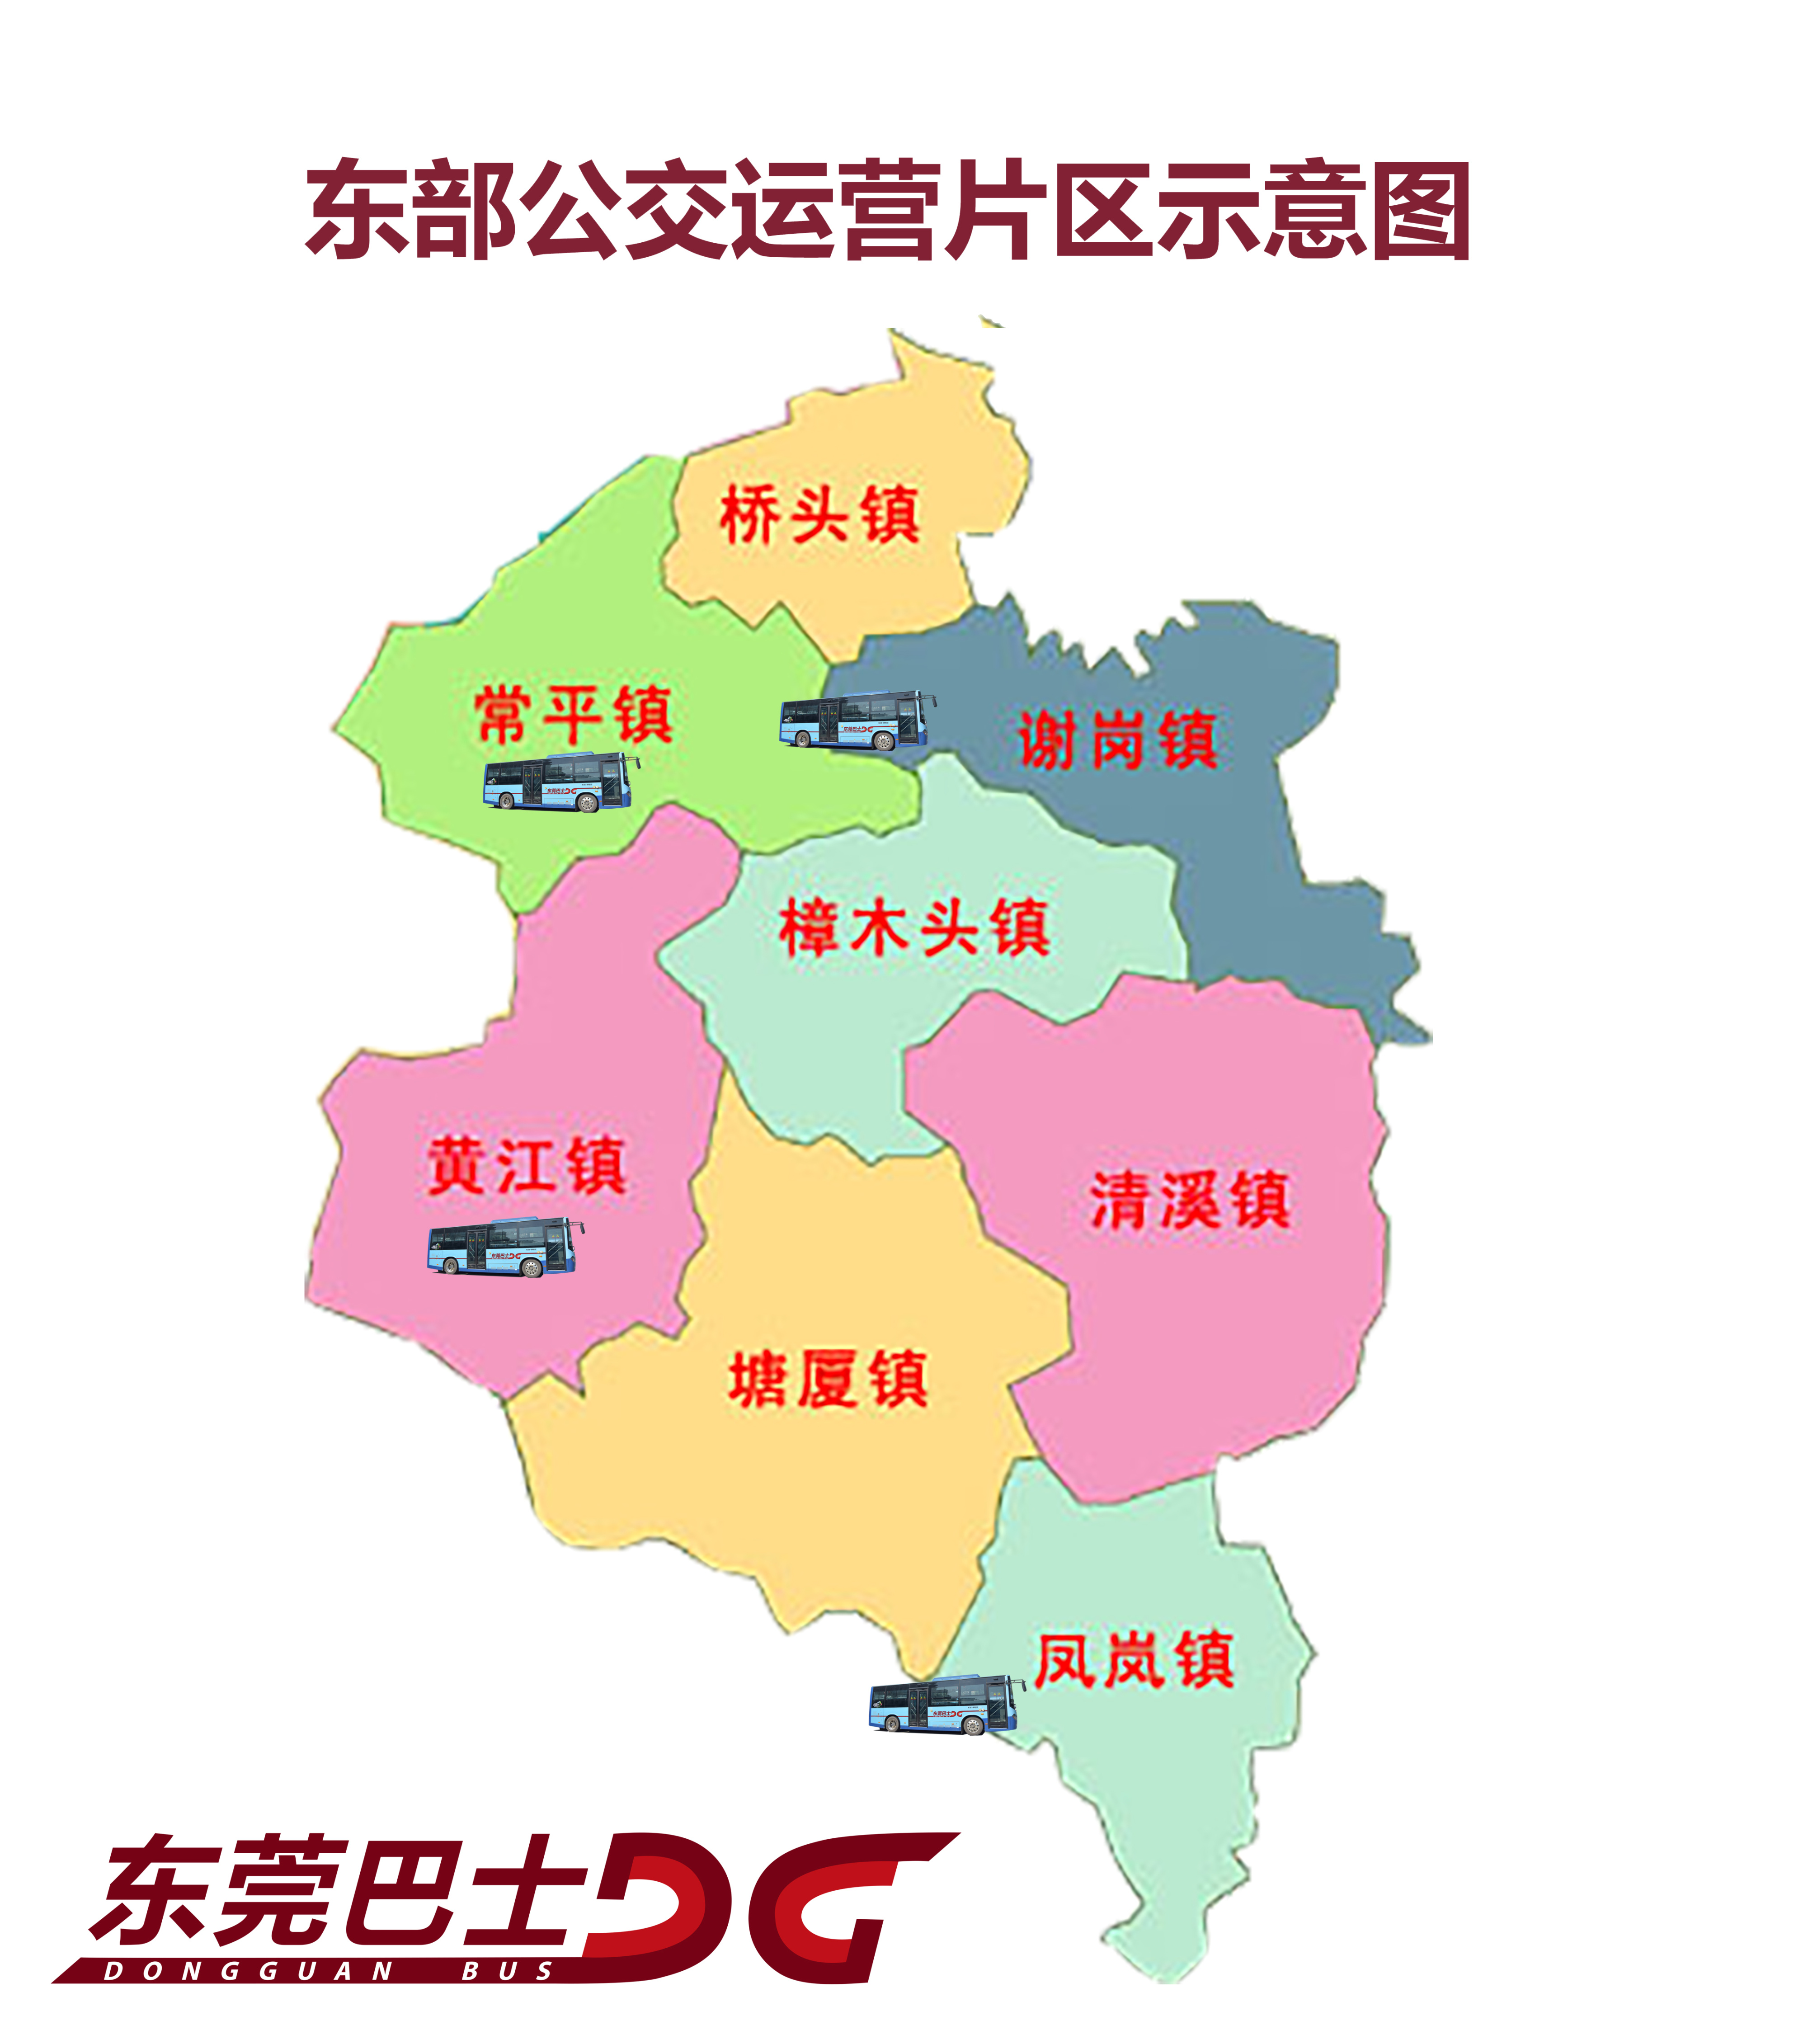 11月5日起蓝巴士陆续进驻凤岗谢岗6条公交线路有调整